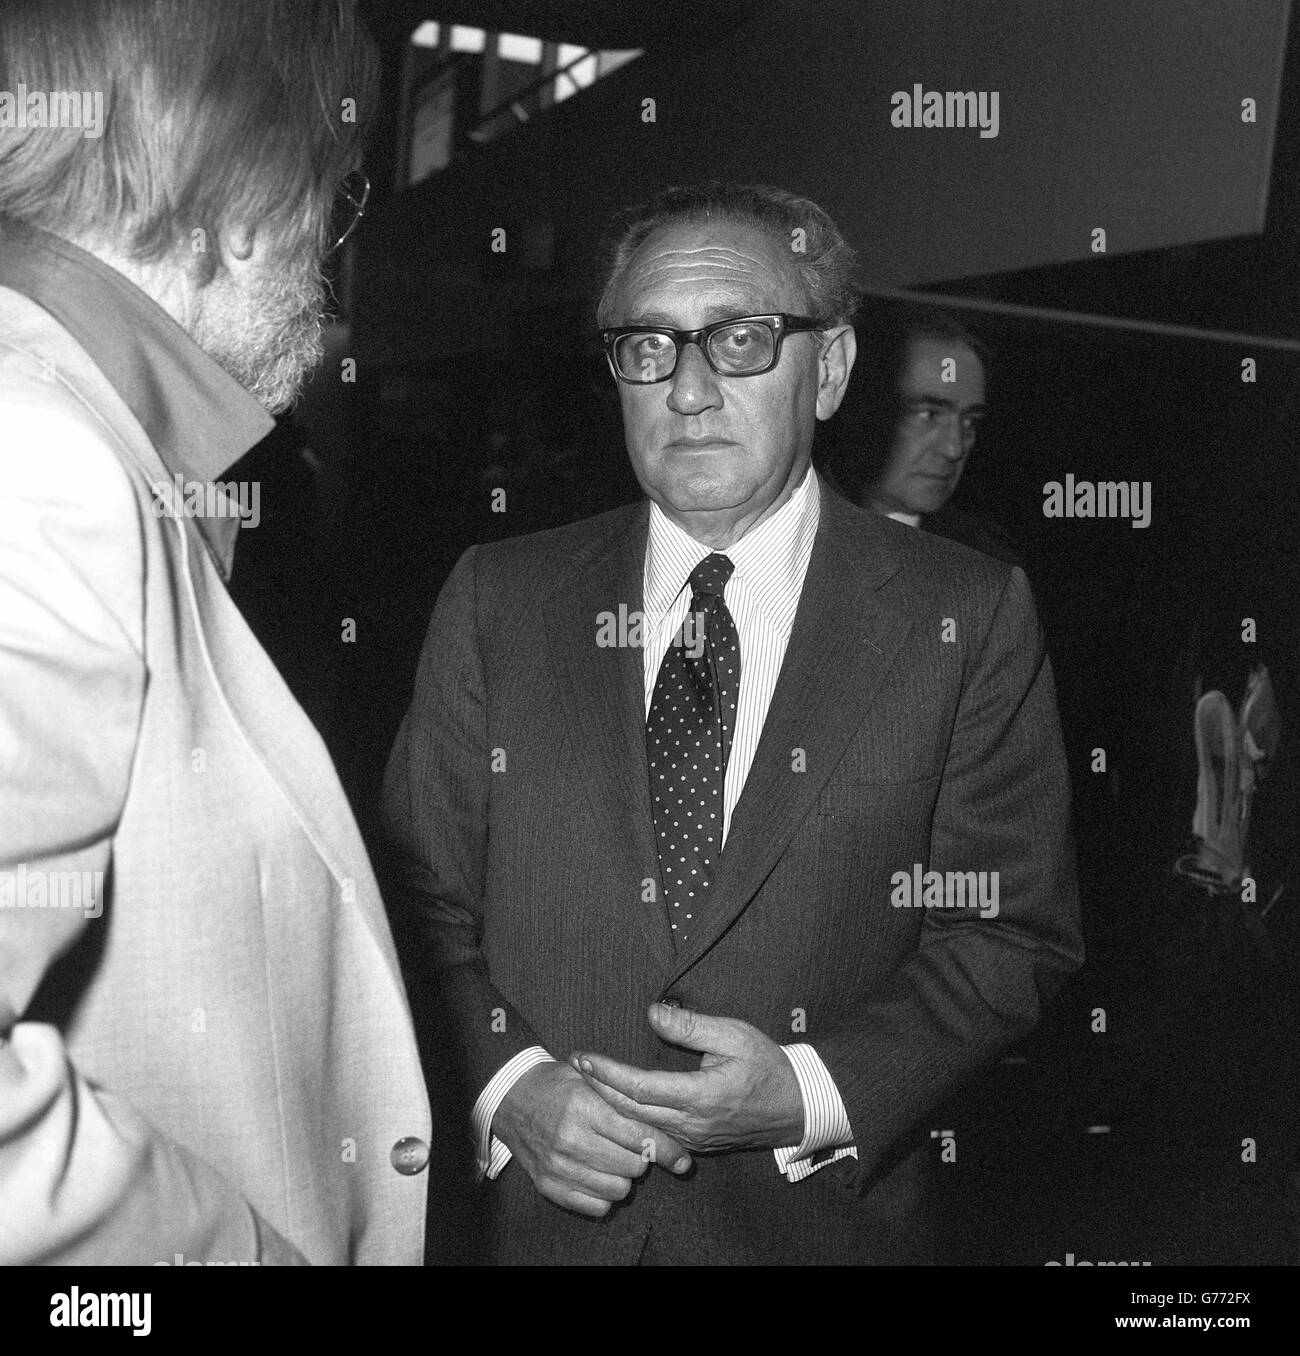 Ein neues Porträt des ehemaligen amerikanischen Außenministers während der zweiten Amtszeit der Nixon-Regierung, Dr. Henry Kissinger, bei einem kürzlichen Besuch in Großbritannien. Stockfoto